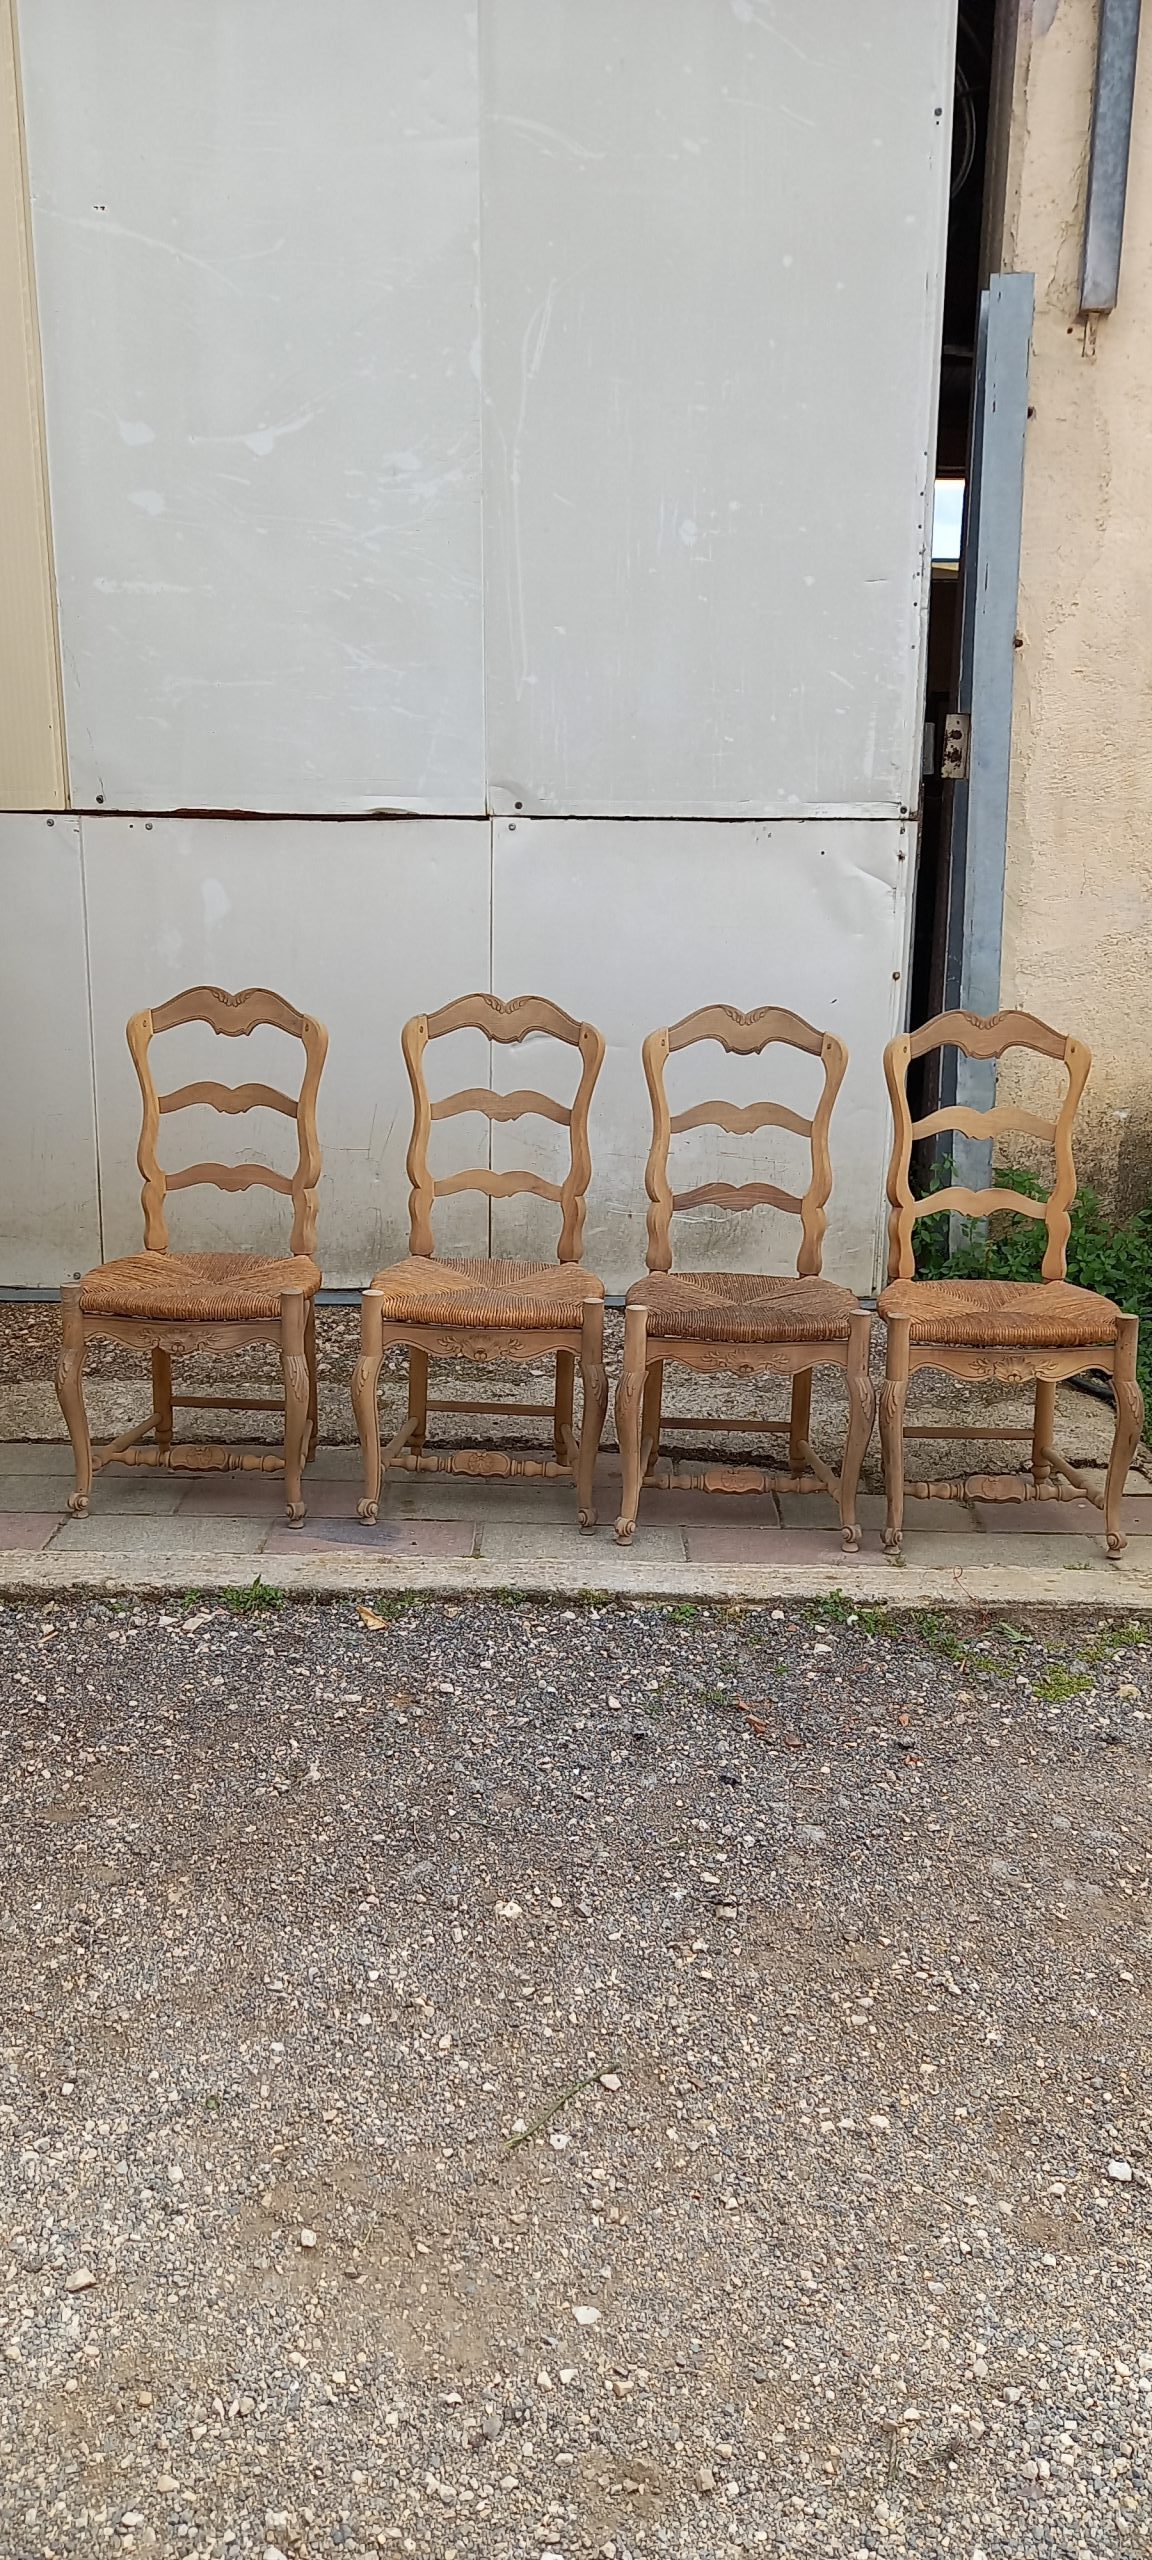 σετ από έξι ξύλινες καρέκλες ,χειροποίητες με ψάθινο κάθισμα ,χωριάτικο στυλ, με σκαλίσματα στην πλάτη και στα πόδια ,σε φυσικο χρωμα ξυλου